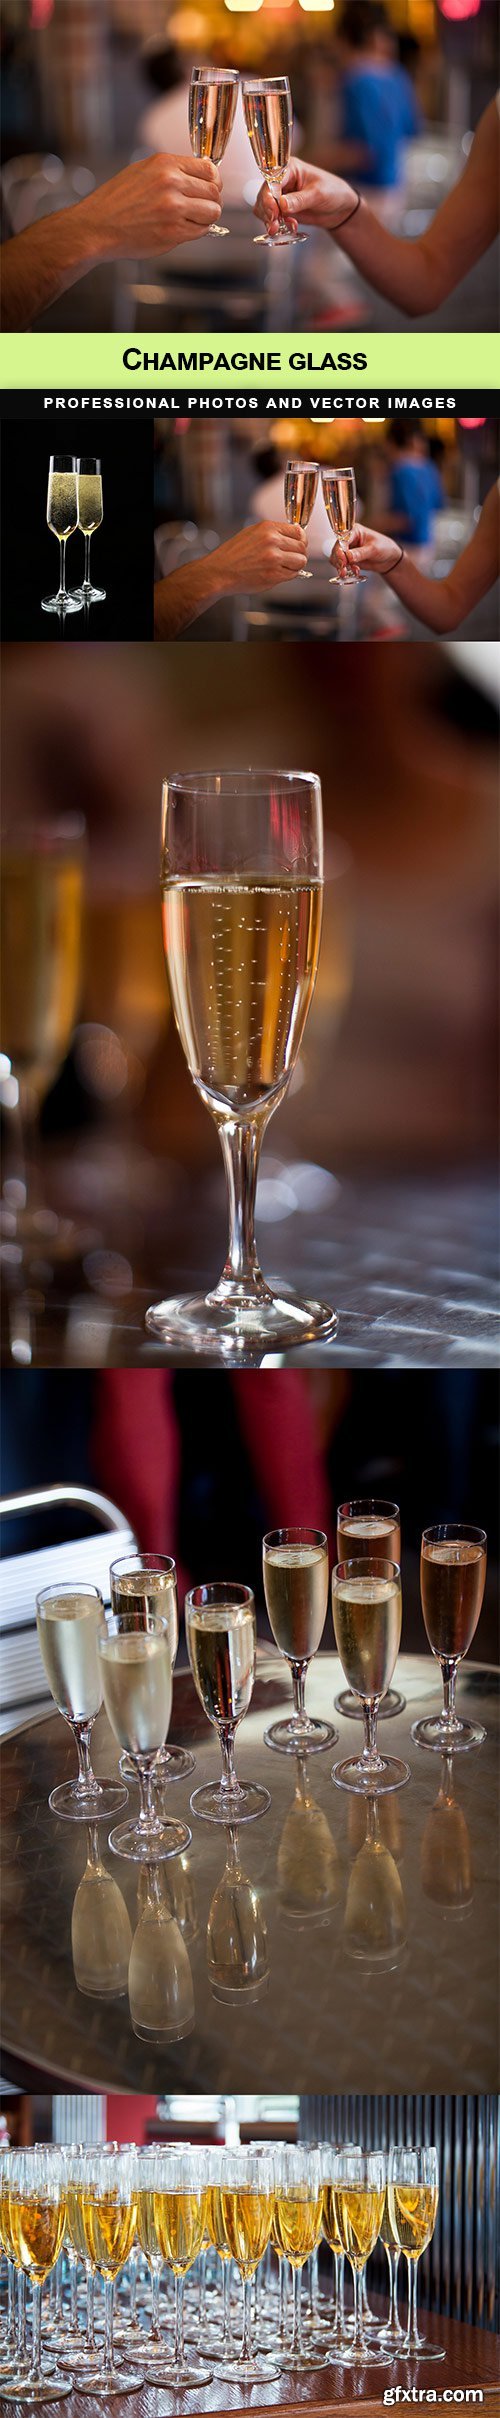 Champagne glass - 5 UHQ JPEG